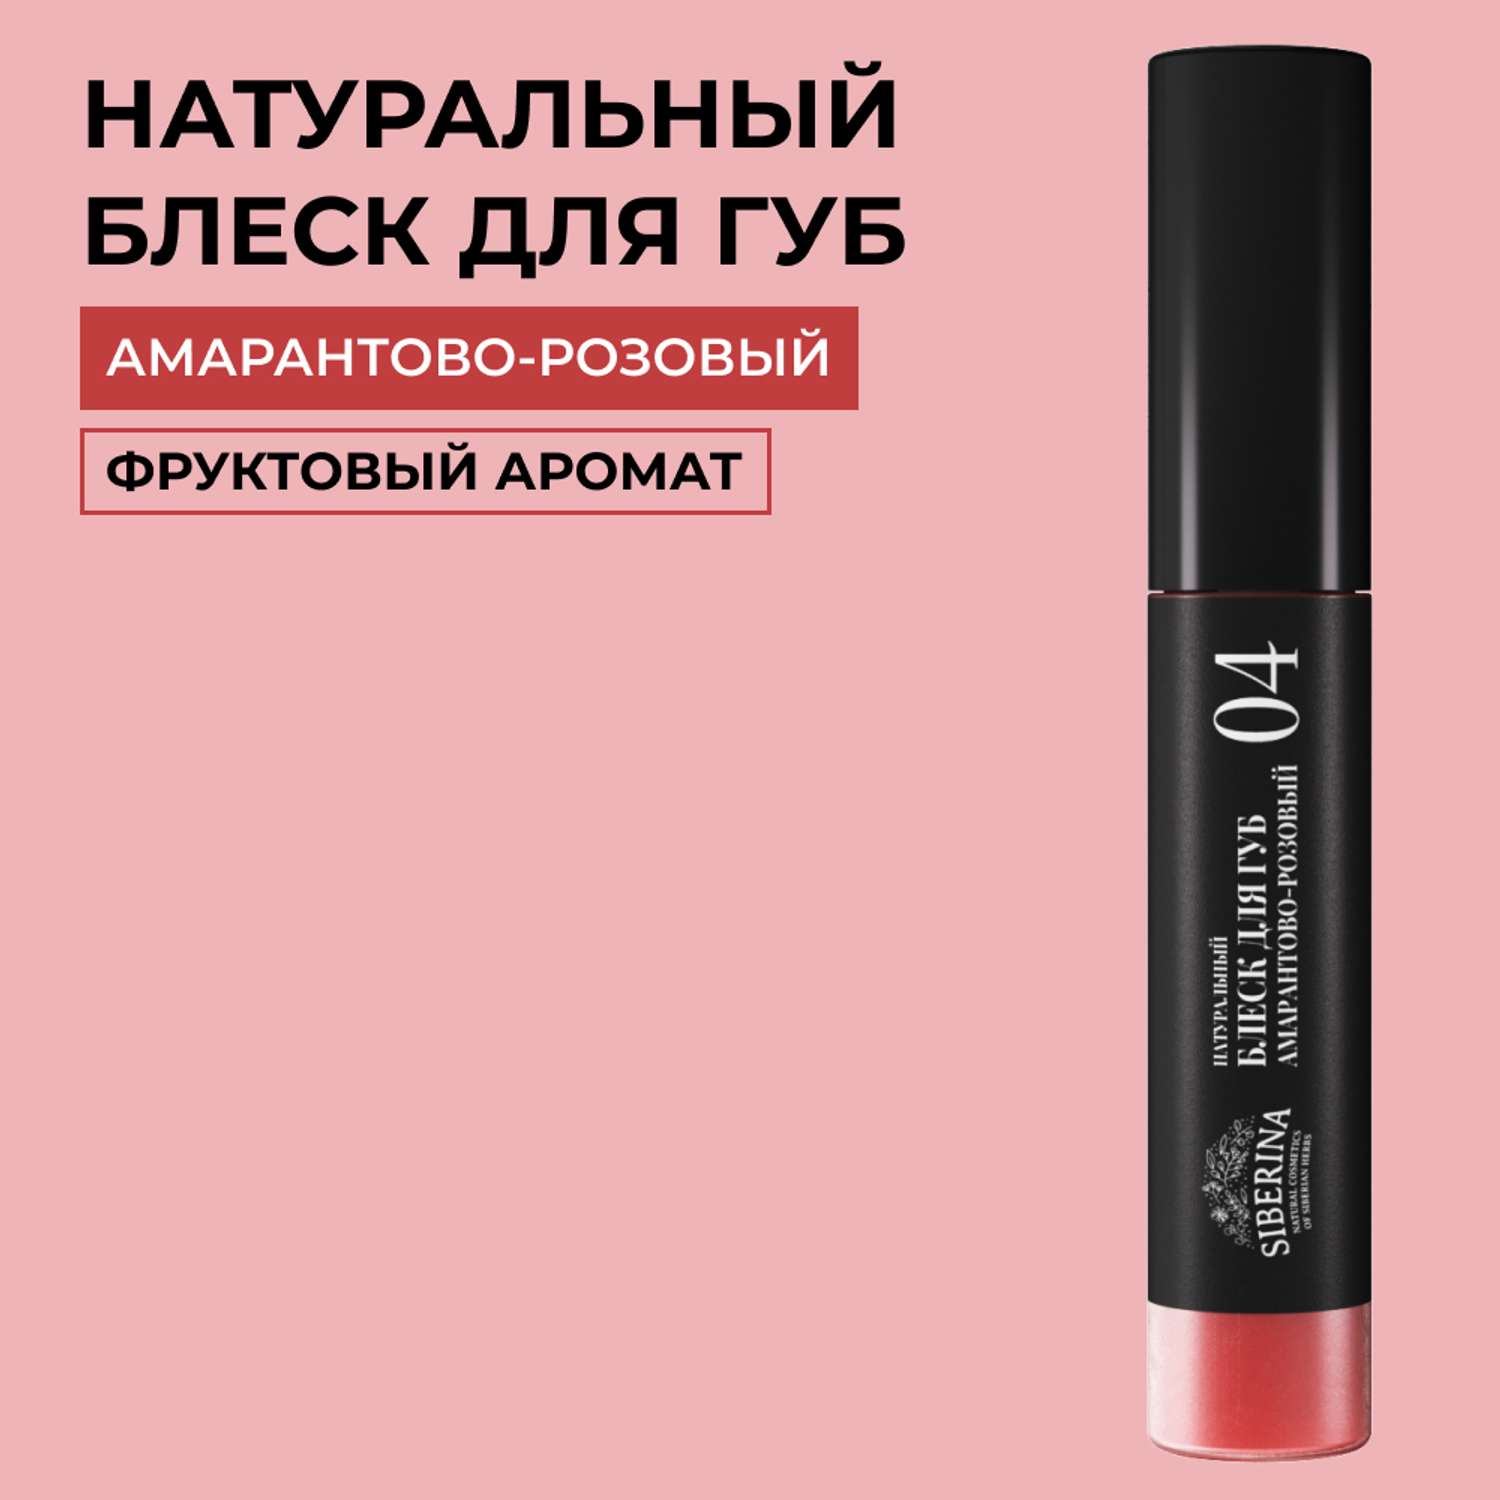 Блеск для губ Siberina натуральный «Амарантово-розовый» глянцевое сияние 10 мл - фото 1